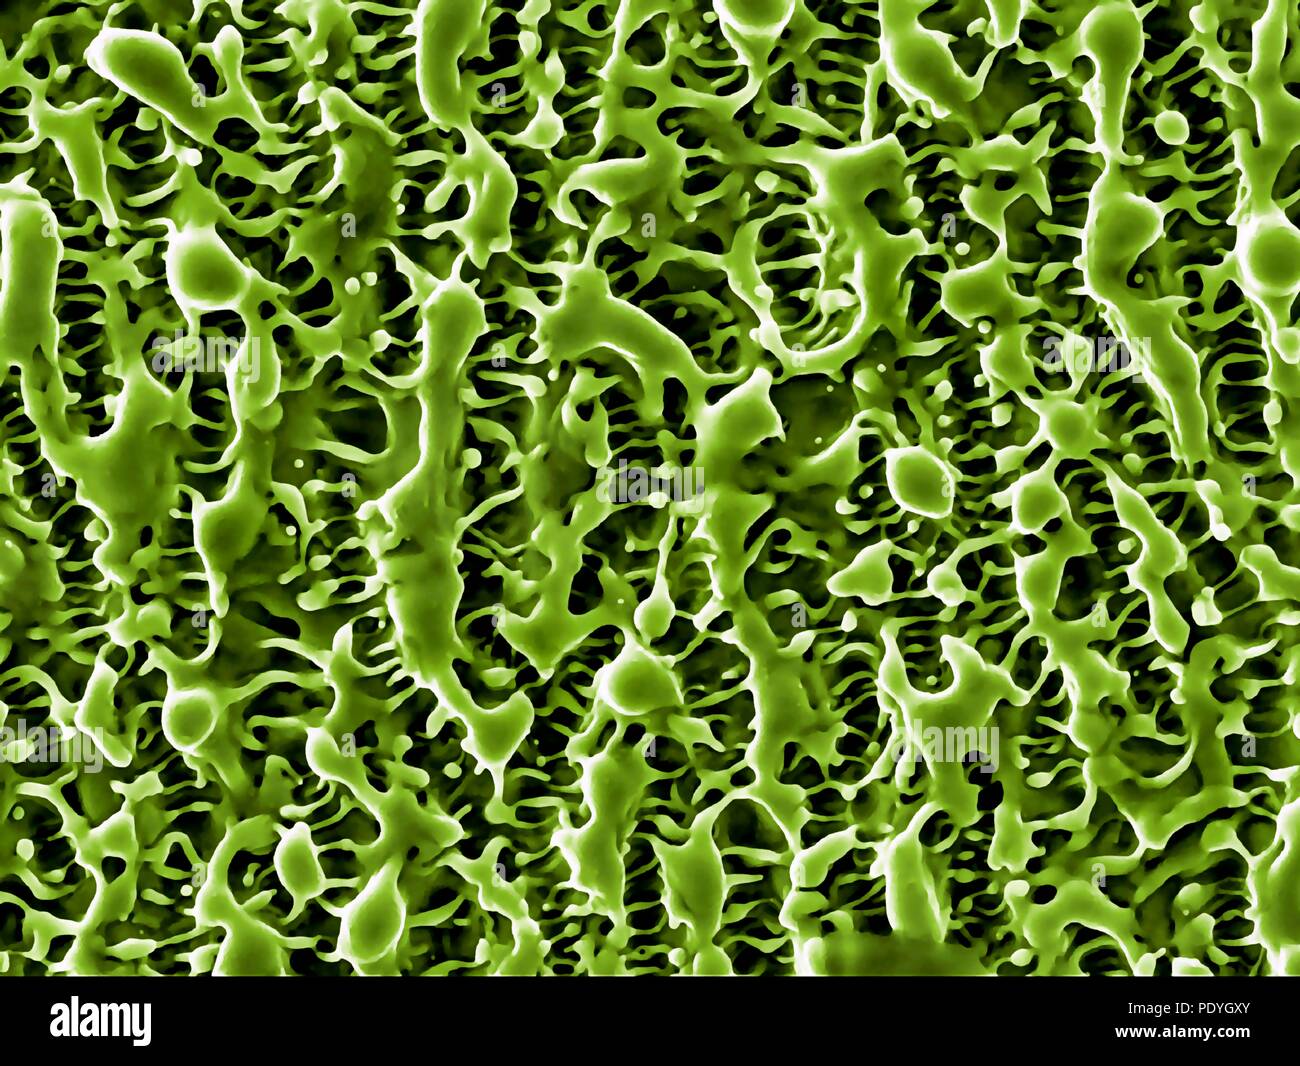 Nanostrutture di nichel. Color scanning electron microfotografia (SEM) di nanostrutture formata su una superficie di nichel mediante un fascio laser. Questa ricerca comporta l'uso di laser per etch e ablare il metallo e superfici di semiconduttore. Le nanostrutture risultante può avere applicazioni in varie forme di elettronica e la nanotecnologia. Foto Stock